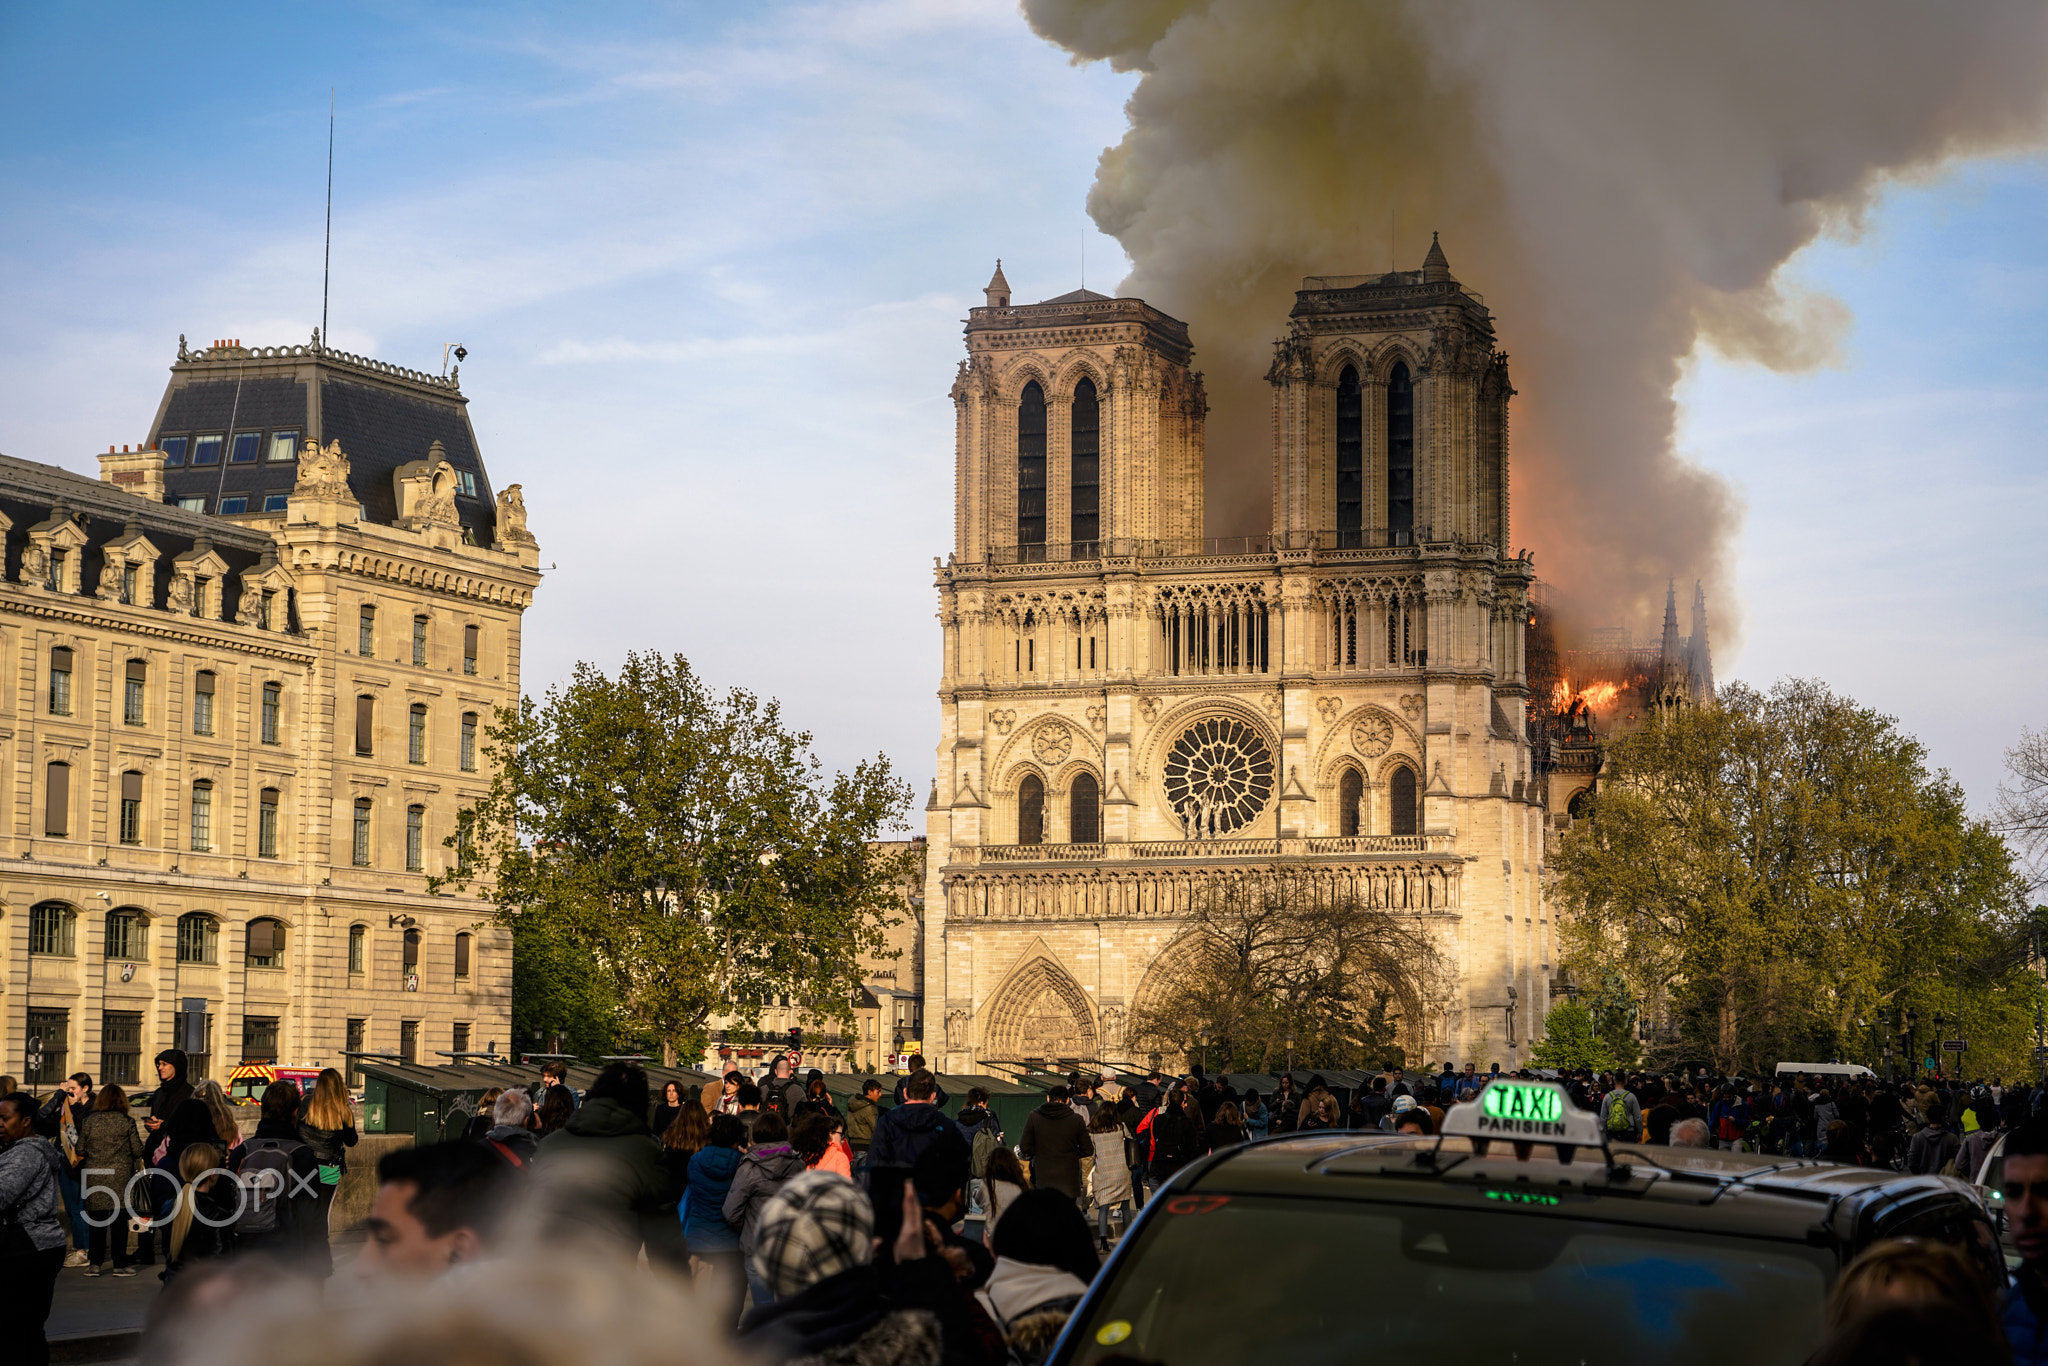 Notre-Dame de Paris on Fire